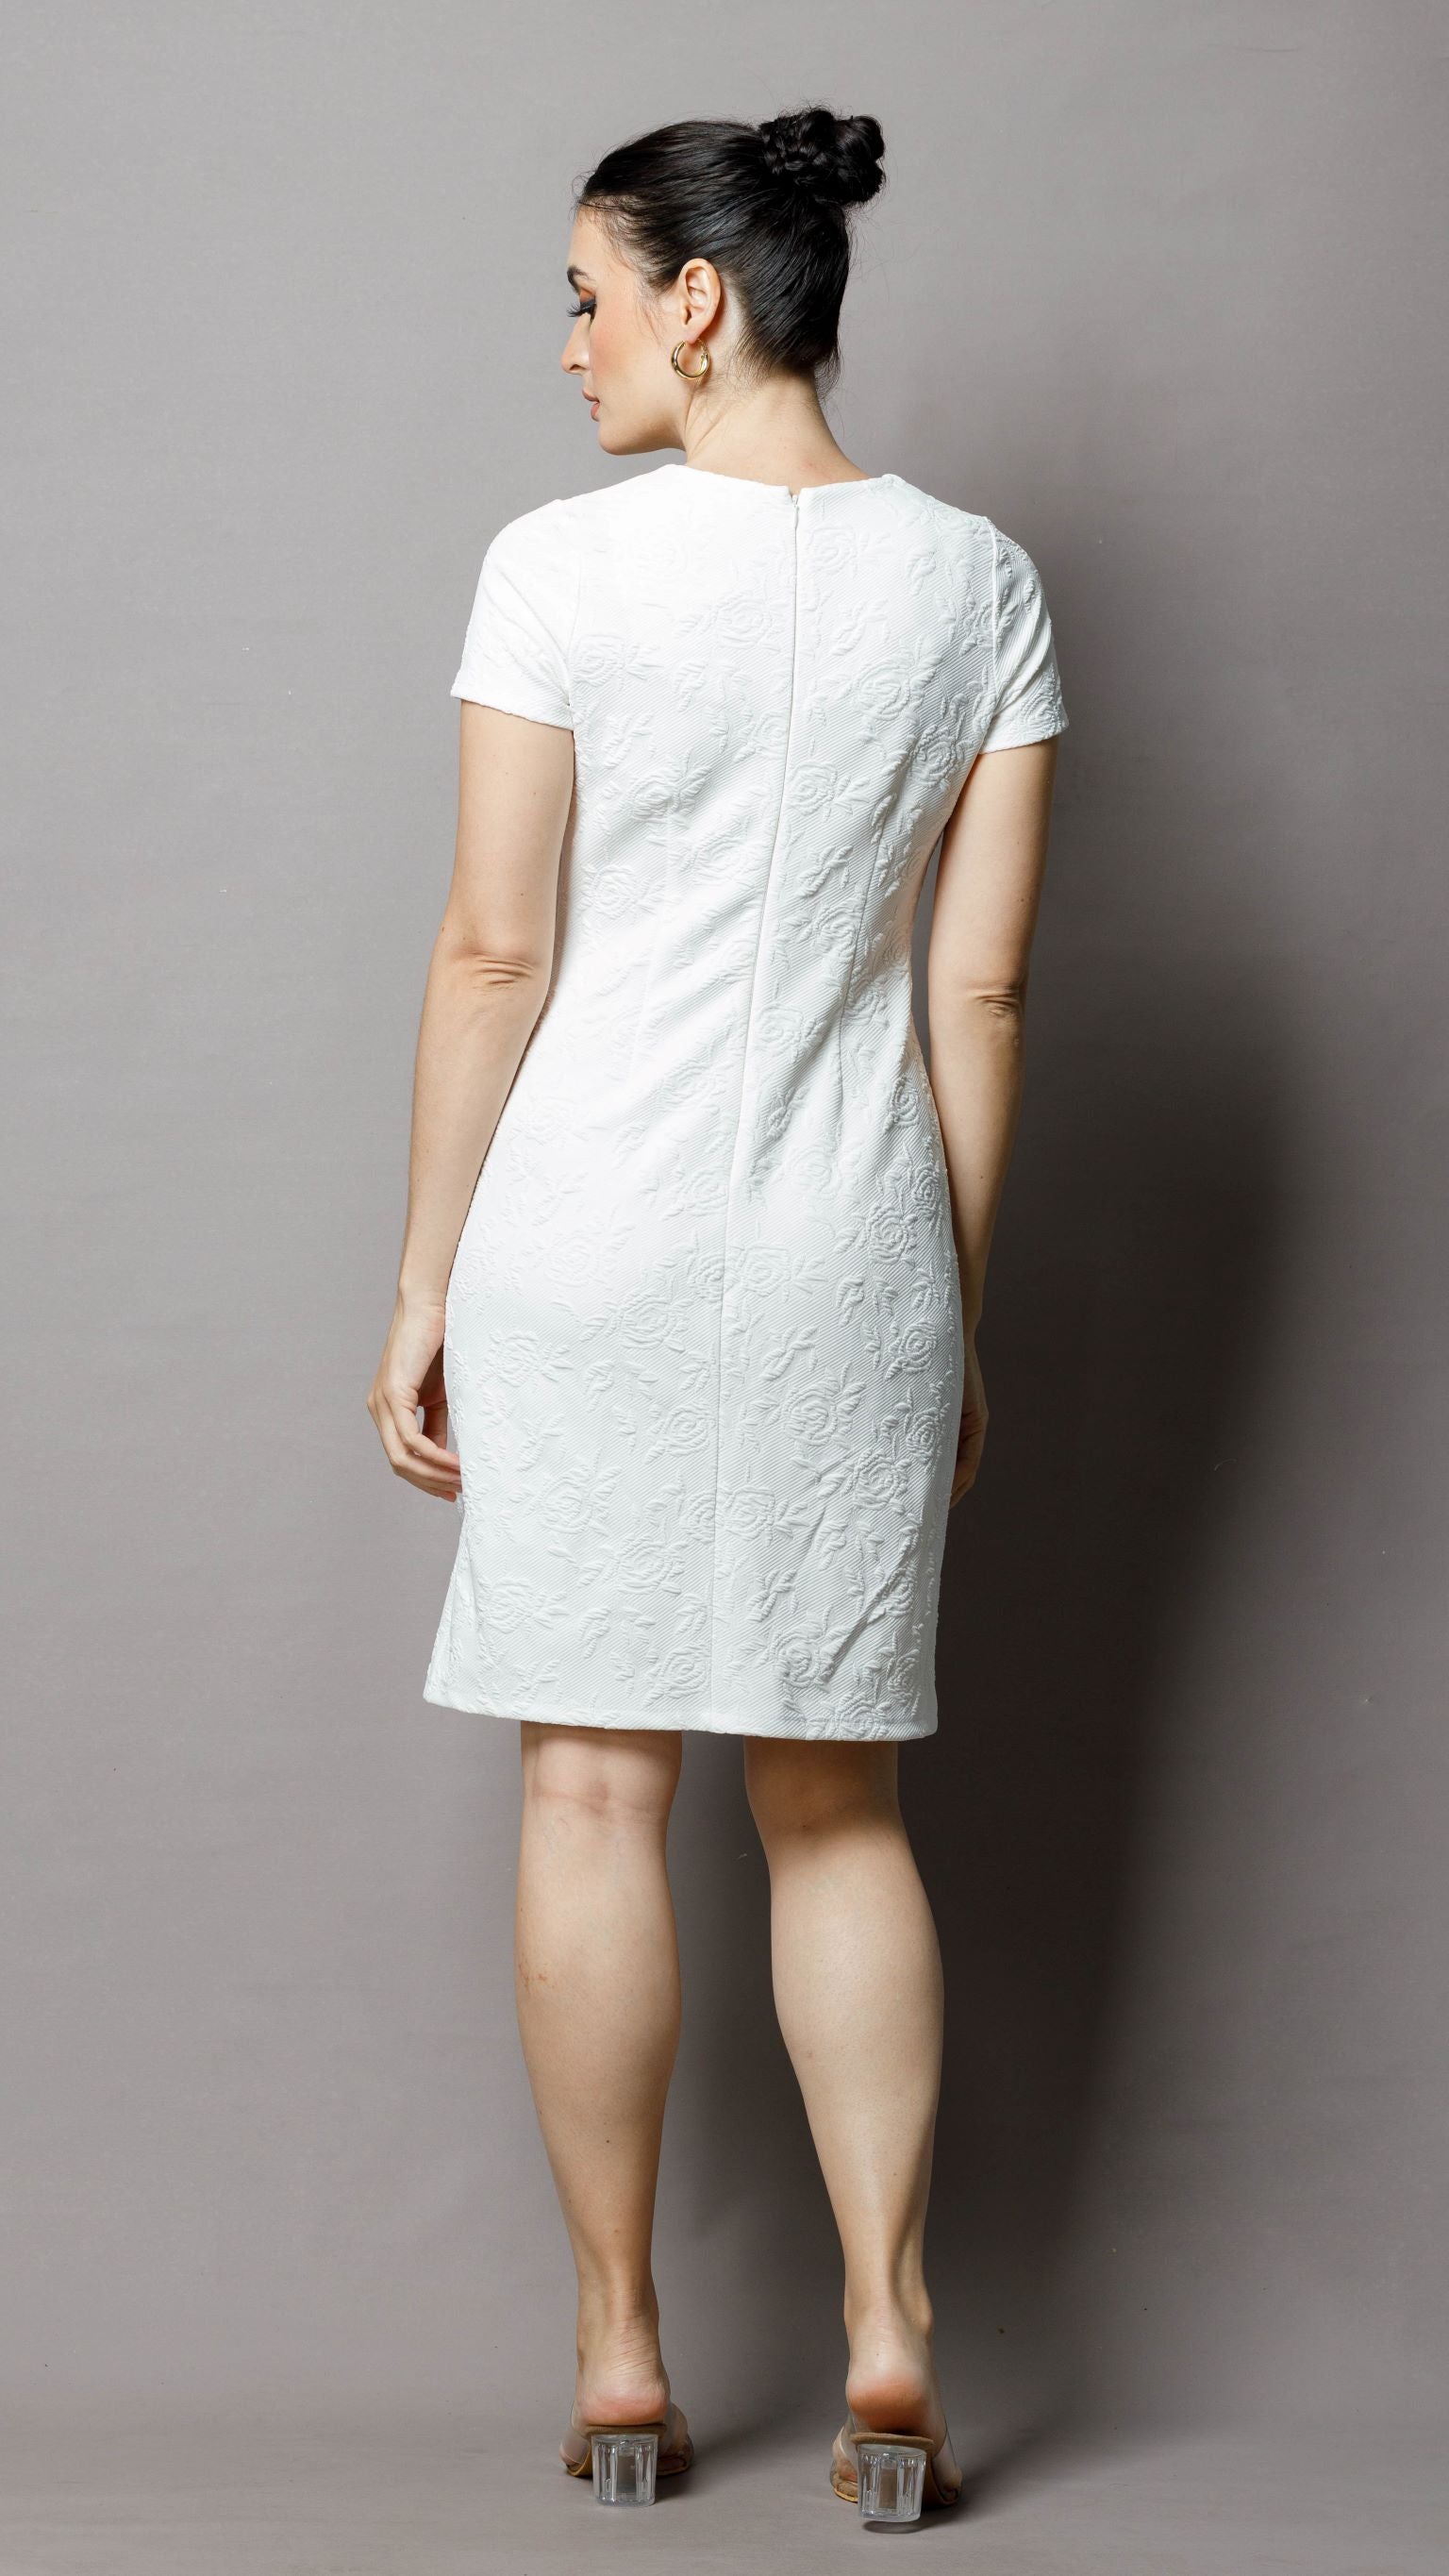 Pocket detailed white dress